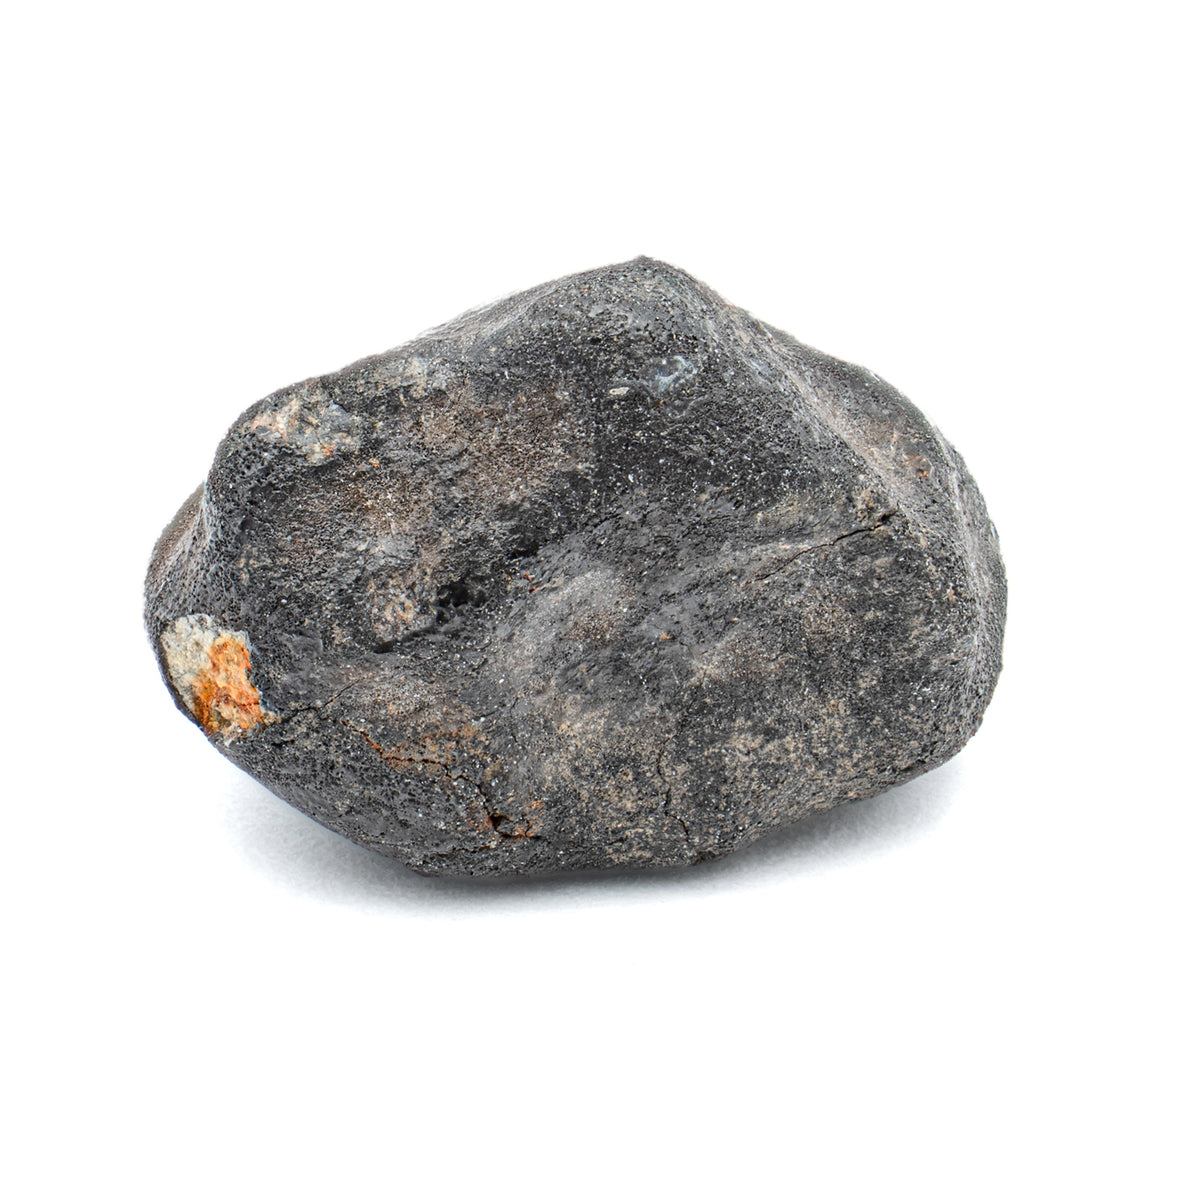 Chelyabinsk Meteorite - SOLD 2.24g Meteorite Fragment